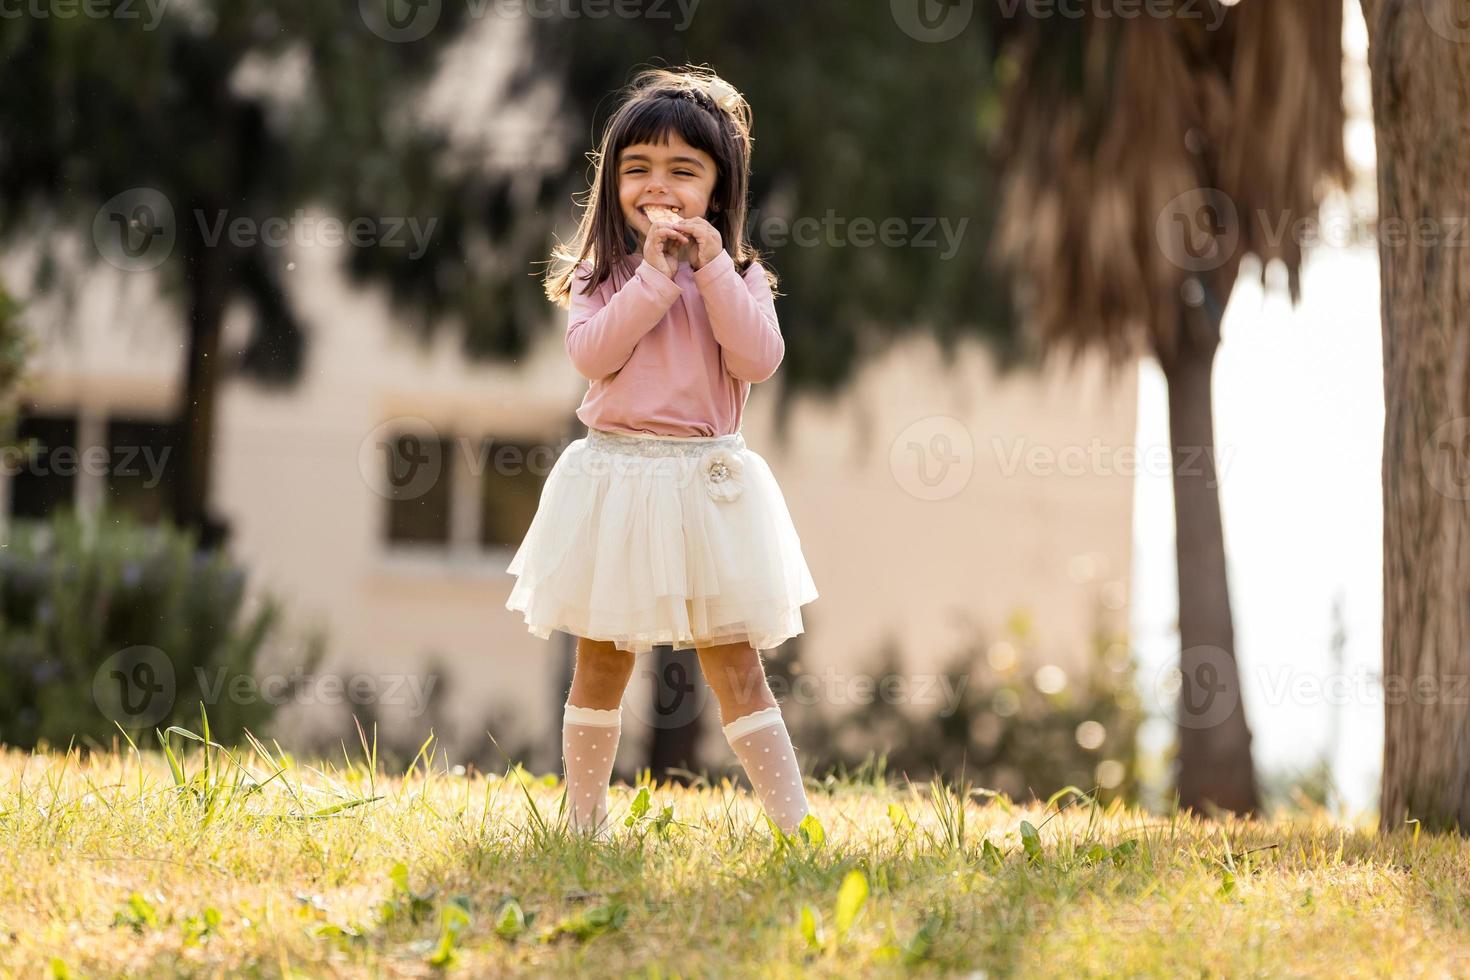 klein meisje dat snoep eet in een park foto